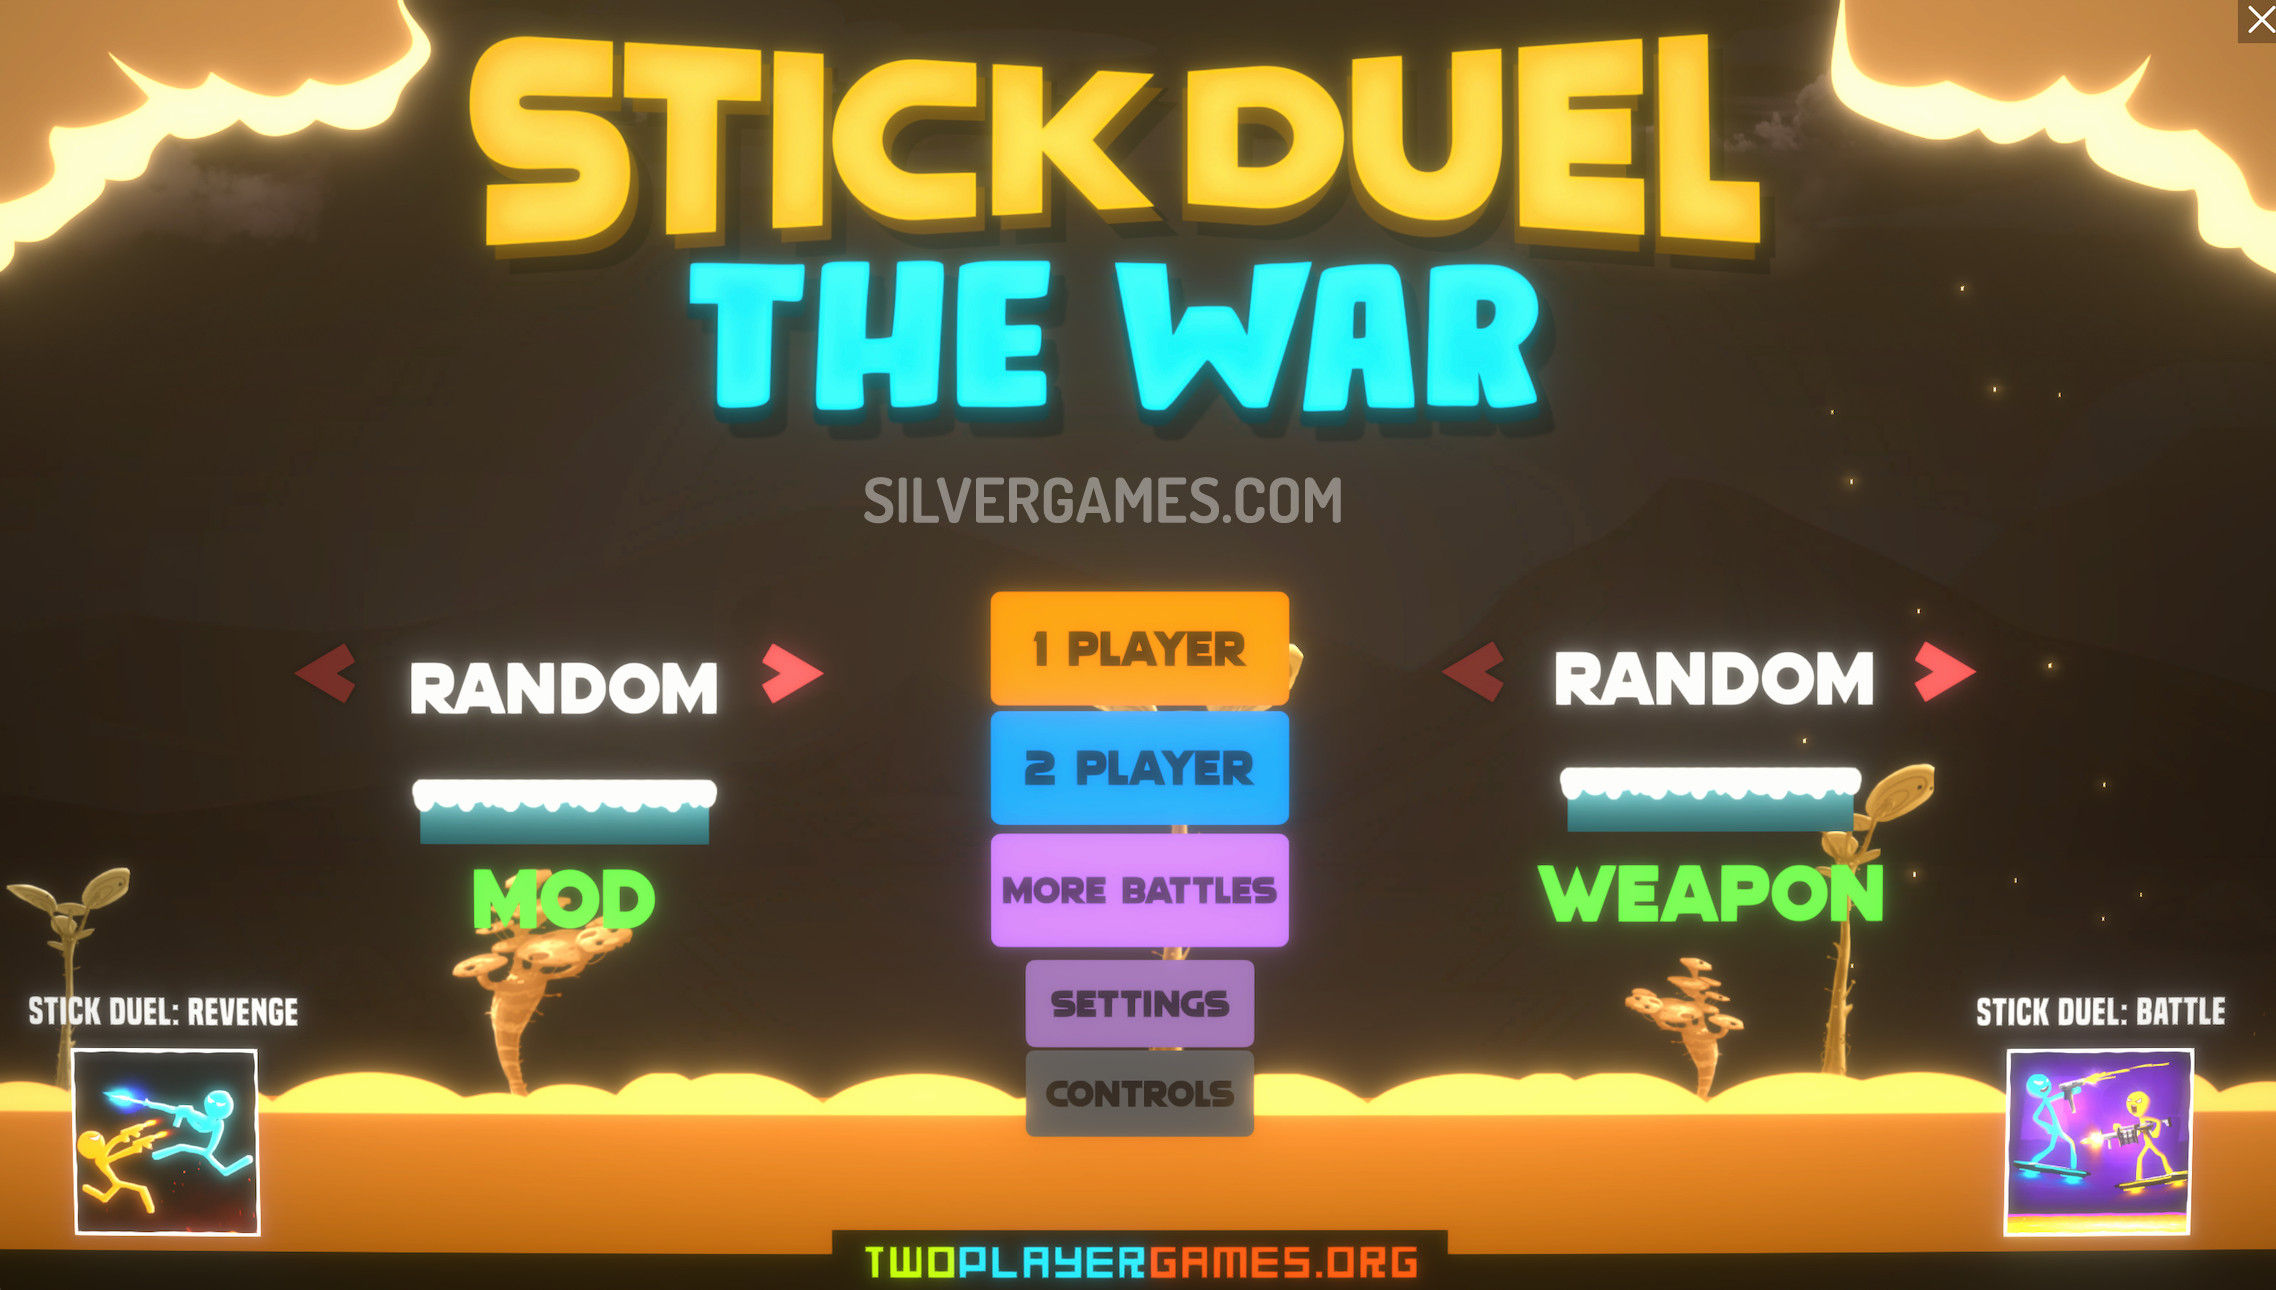 Stick Duel: Medieval Wars